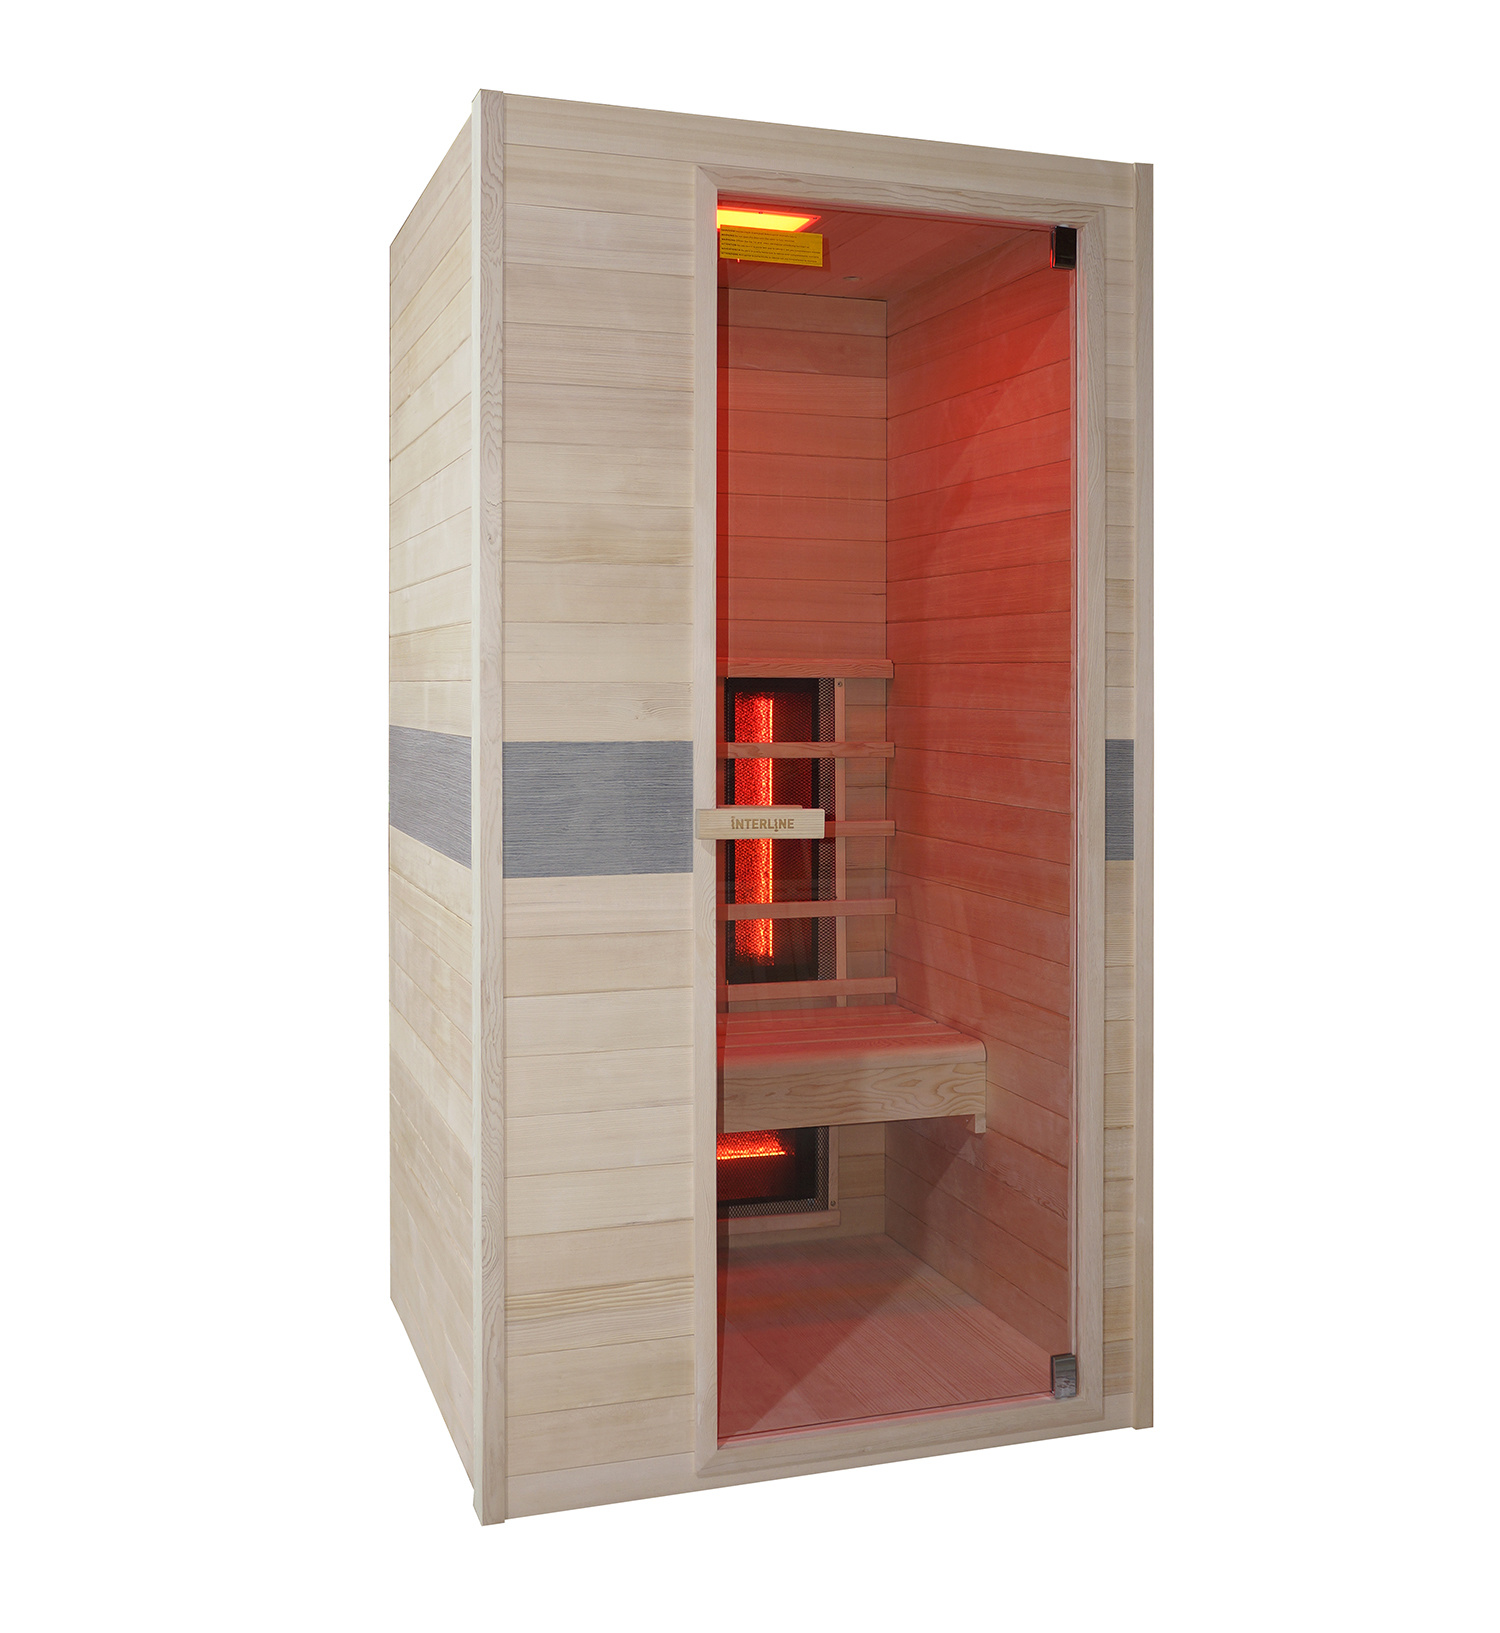 Trechter webspin Civic kunst Interline 1 persoons infrarood sauna kopen? | Zwembadstore.com